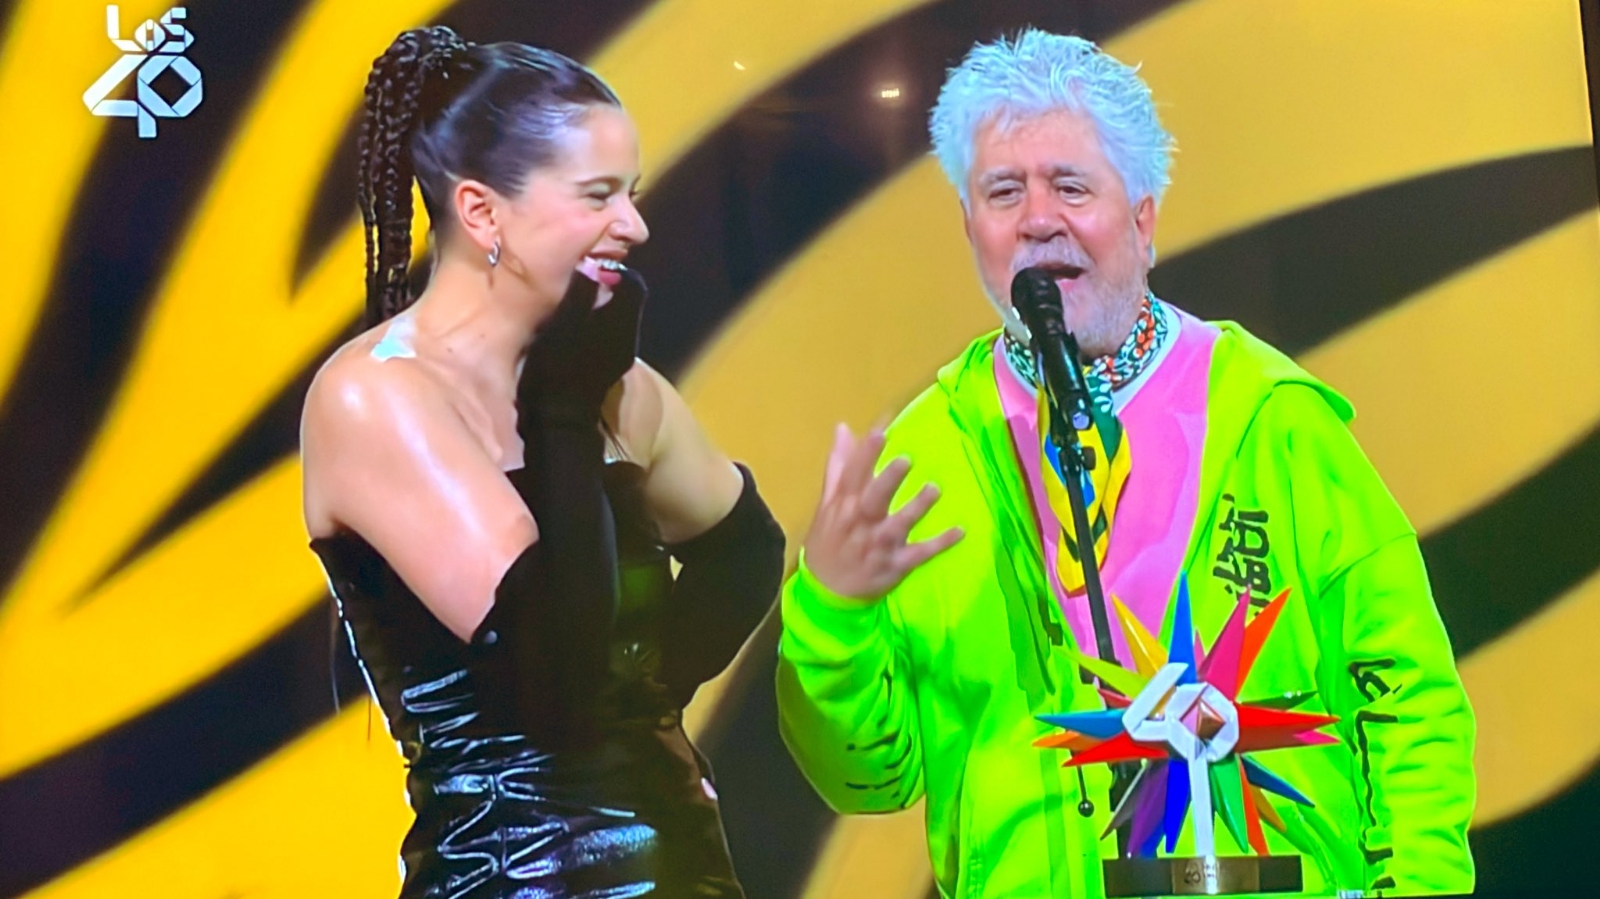 Los40 Music Awards: Rosalía brilla en su paseo por la alfombra roja